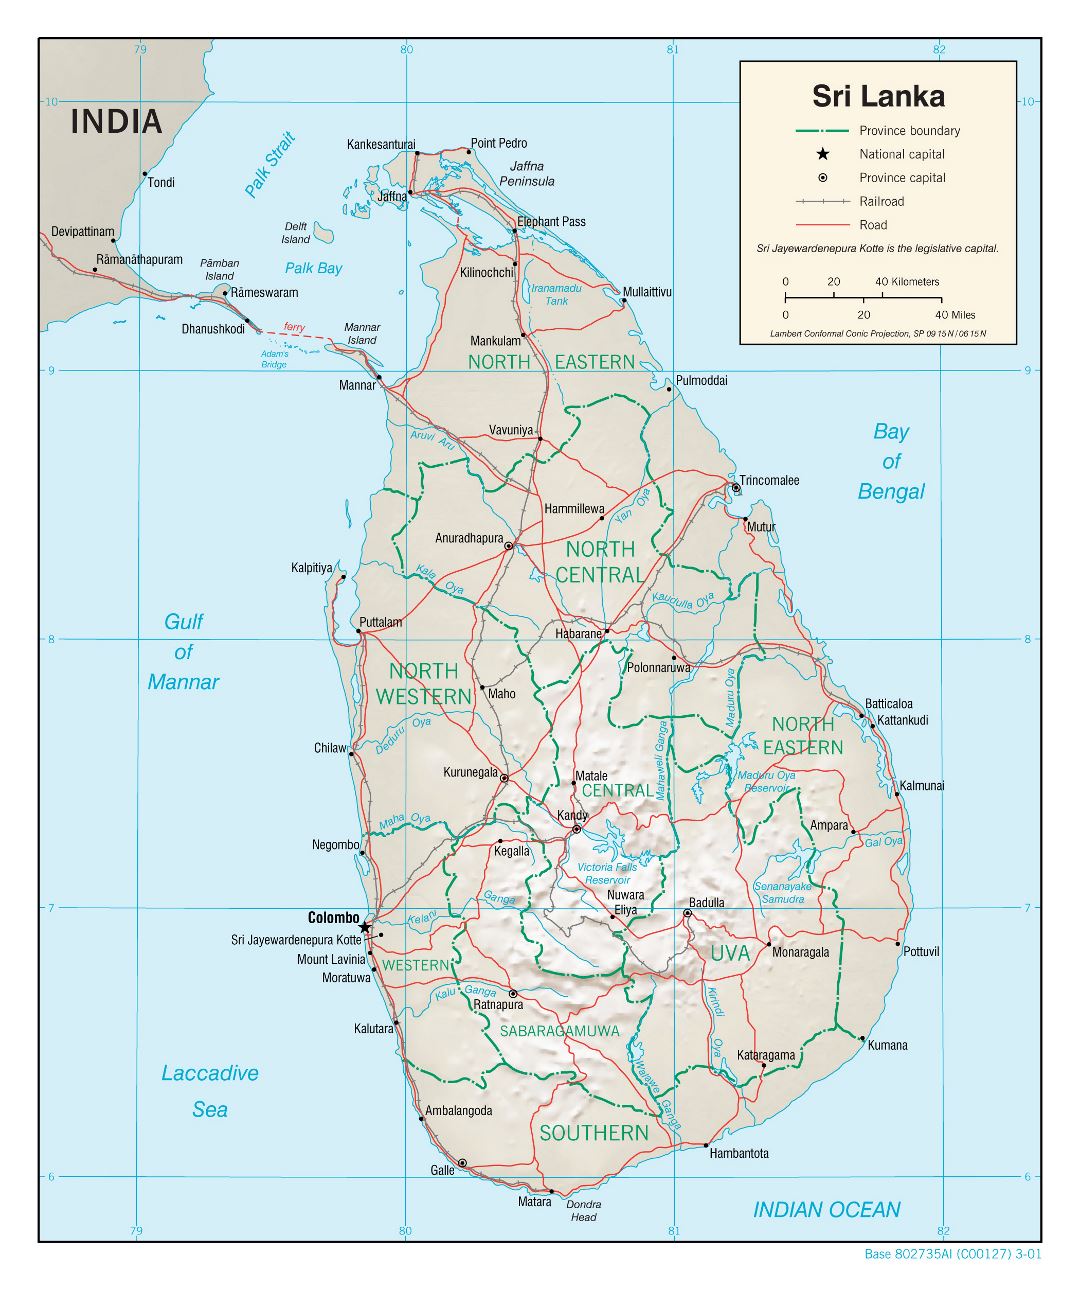 Grande mapa político y administrativo de Sri Lanka con socorro, carreteras, ferrocarriles y principales ciudades - 2001